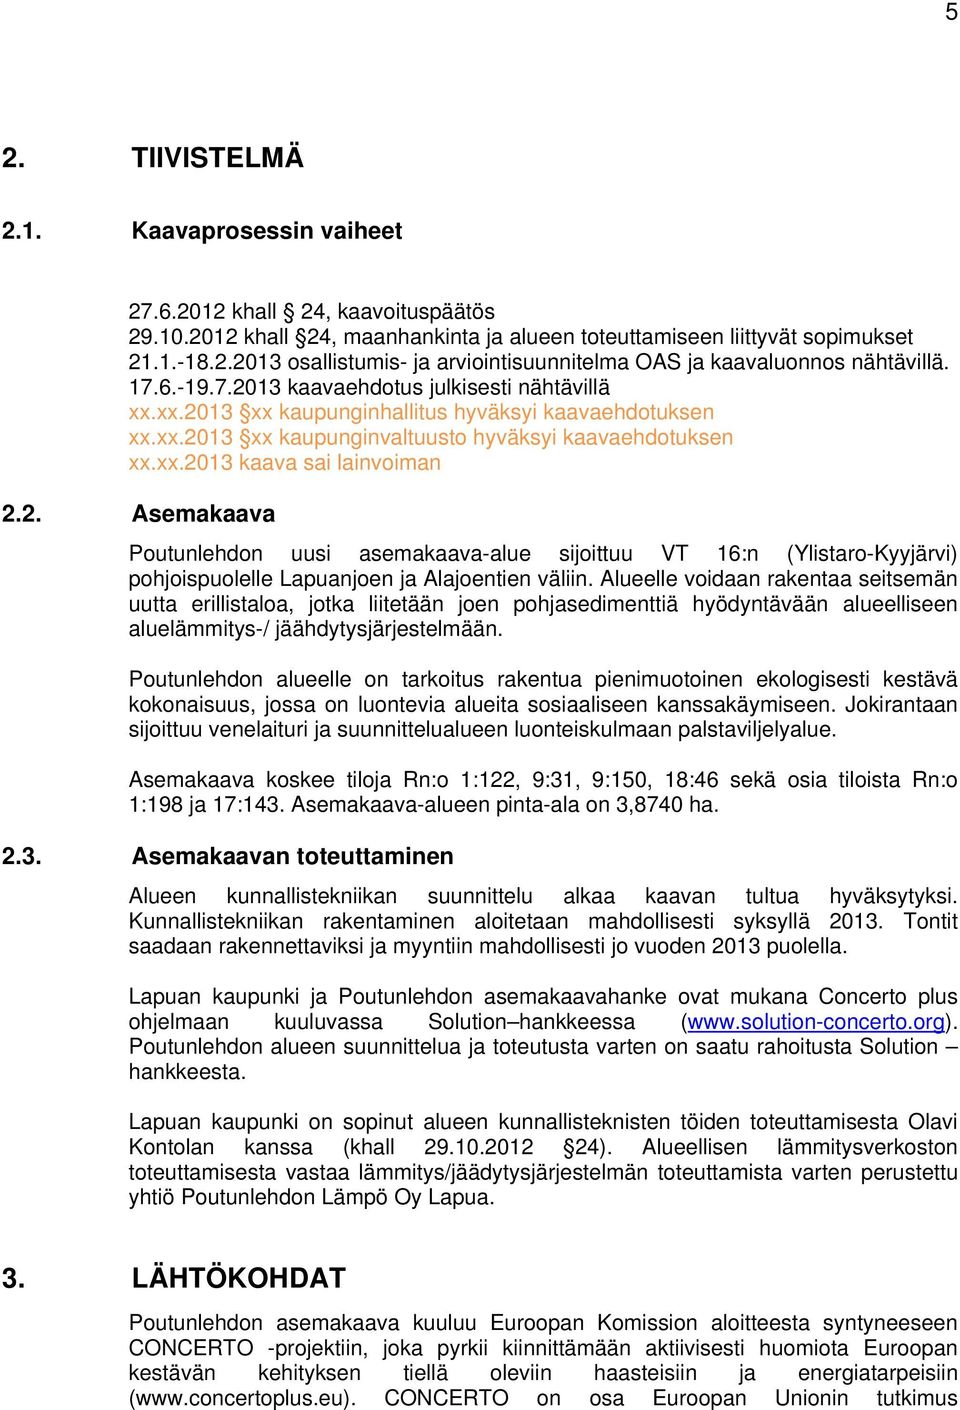 2. Asemakaava Poutunlehdon uusi asemakaava-alue sijoittuu VT 16:n (Ylistaro-Kyyjärvi) pohjoispuolelle Lapuanjoen ja Alajoentien väliin.